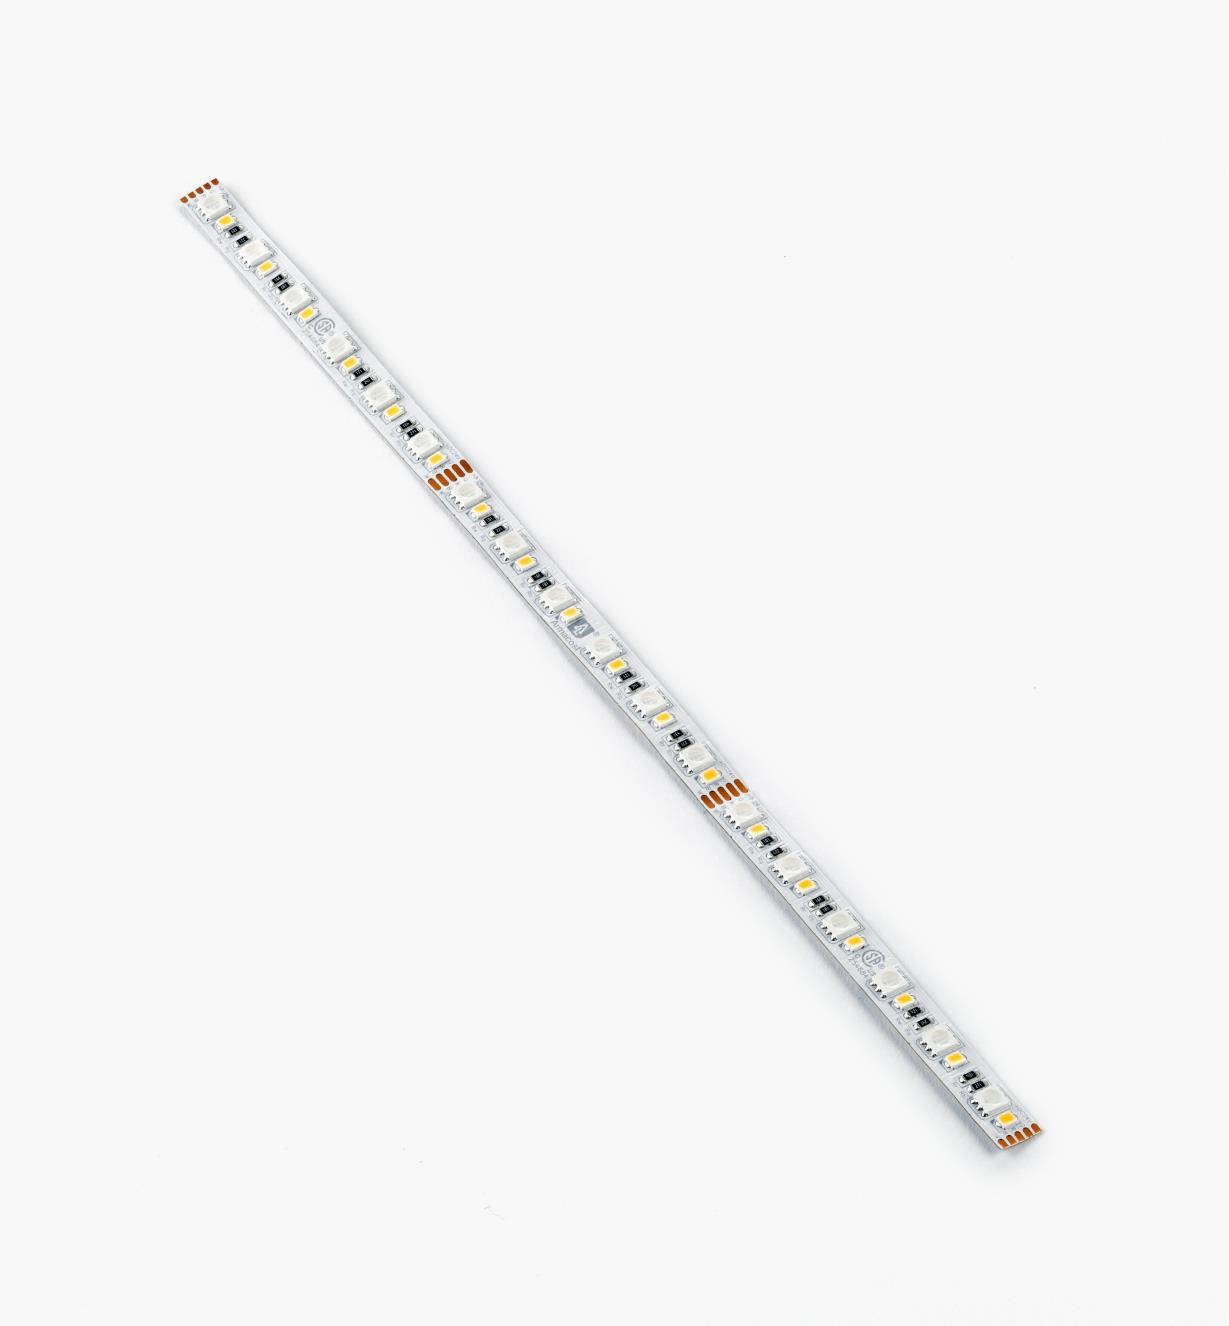 00U4639 - Luminaire-ruban à DEL blanches et à couleur réglable de 60+60 DEL/m, 1 pi (30 cm)